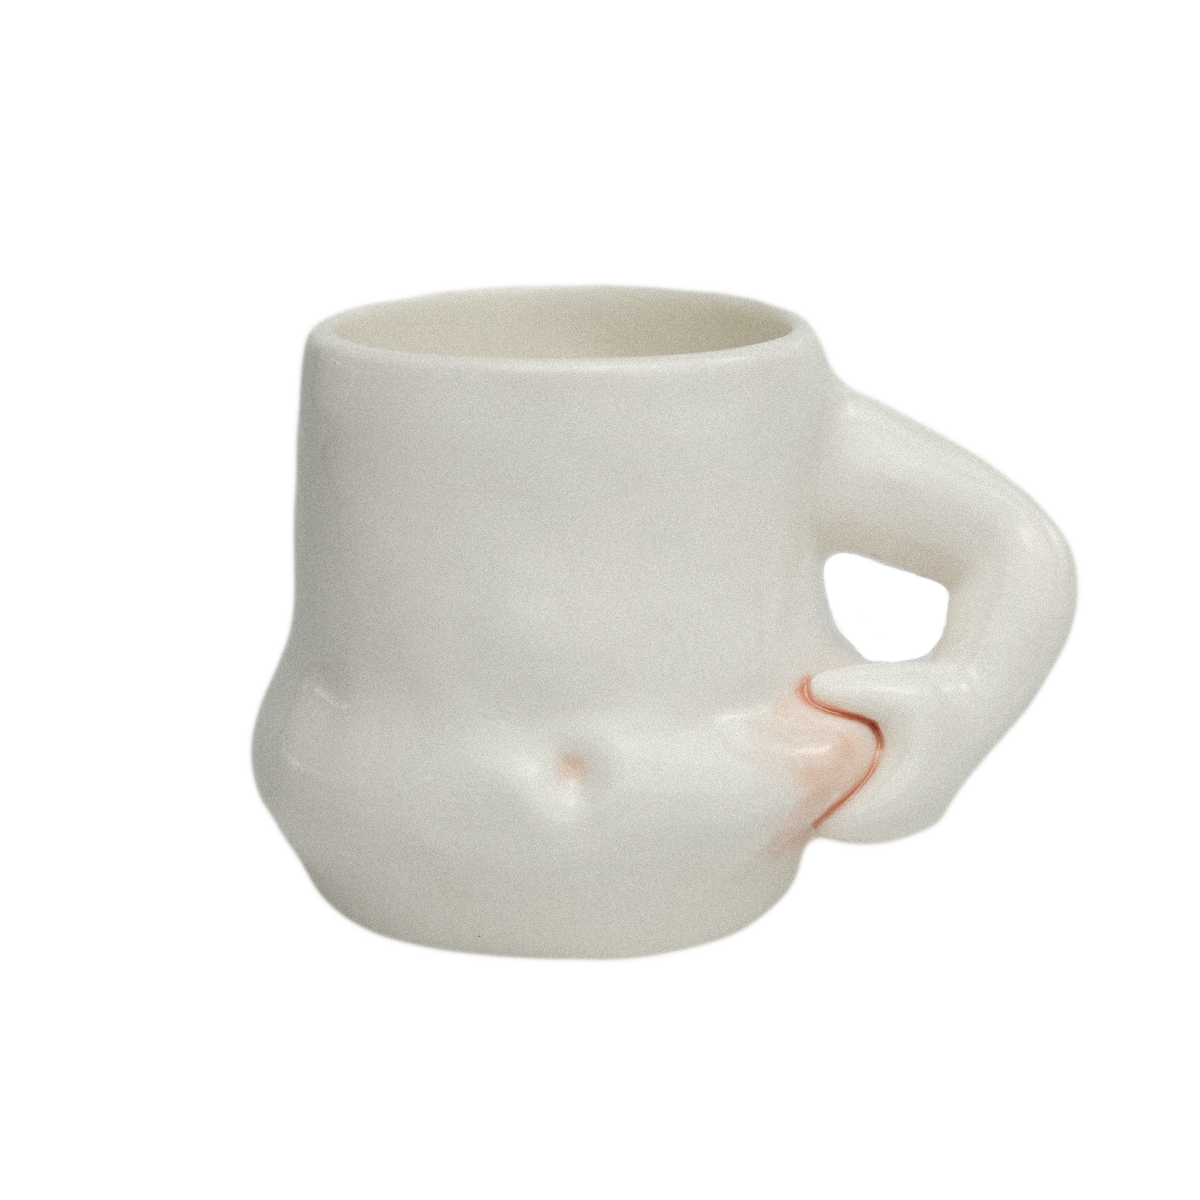 Chubby Coffee Mug Cup